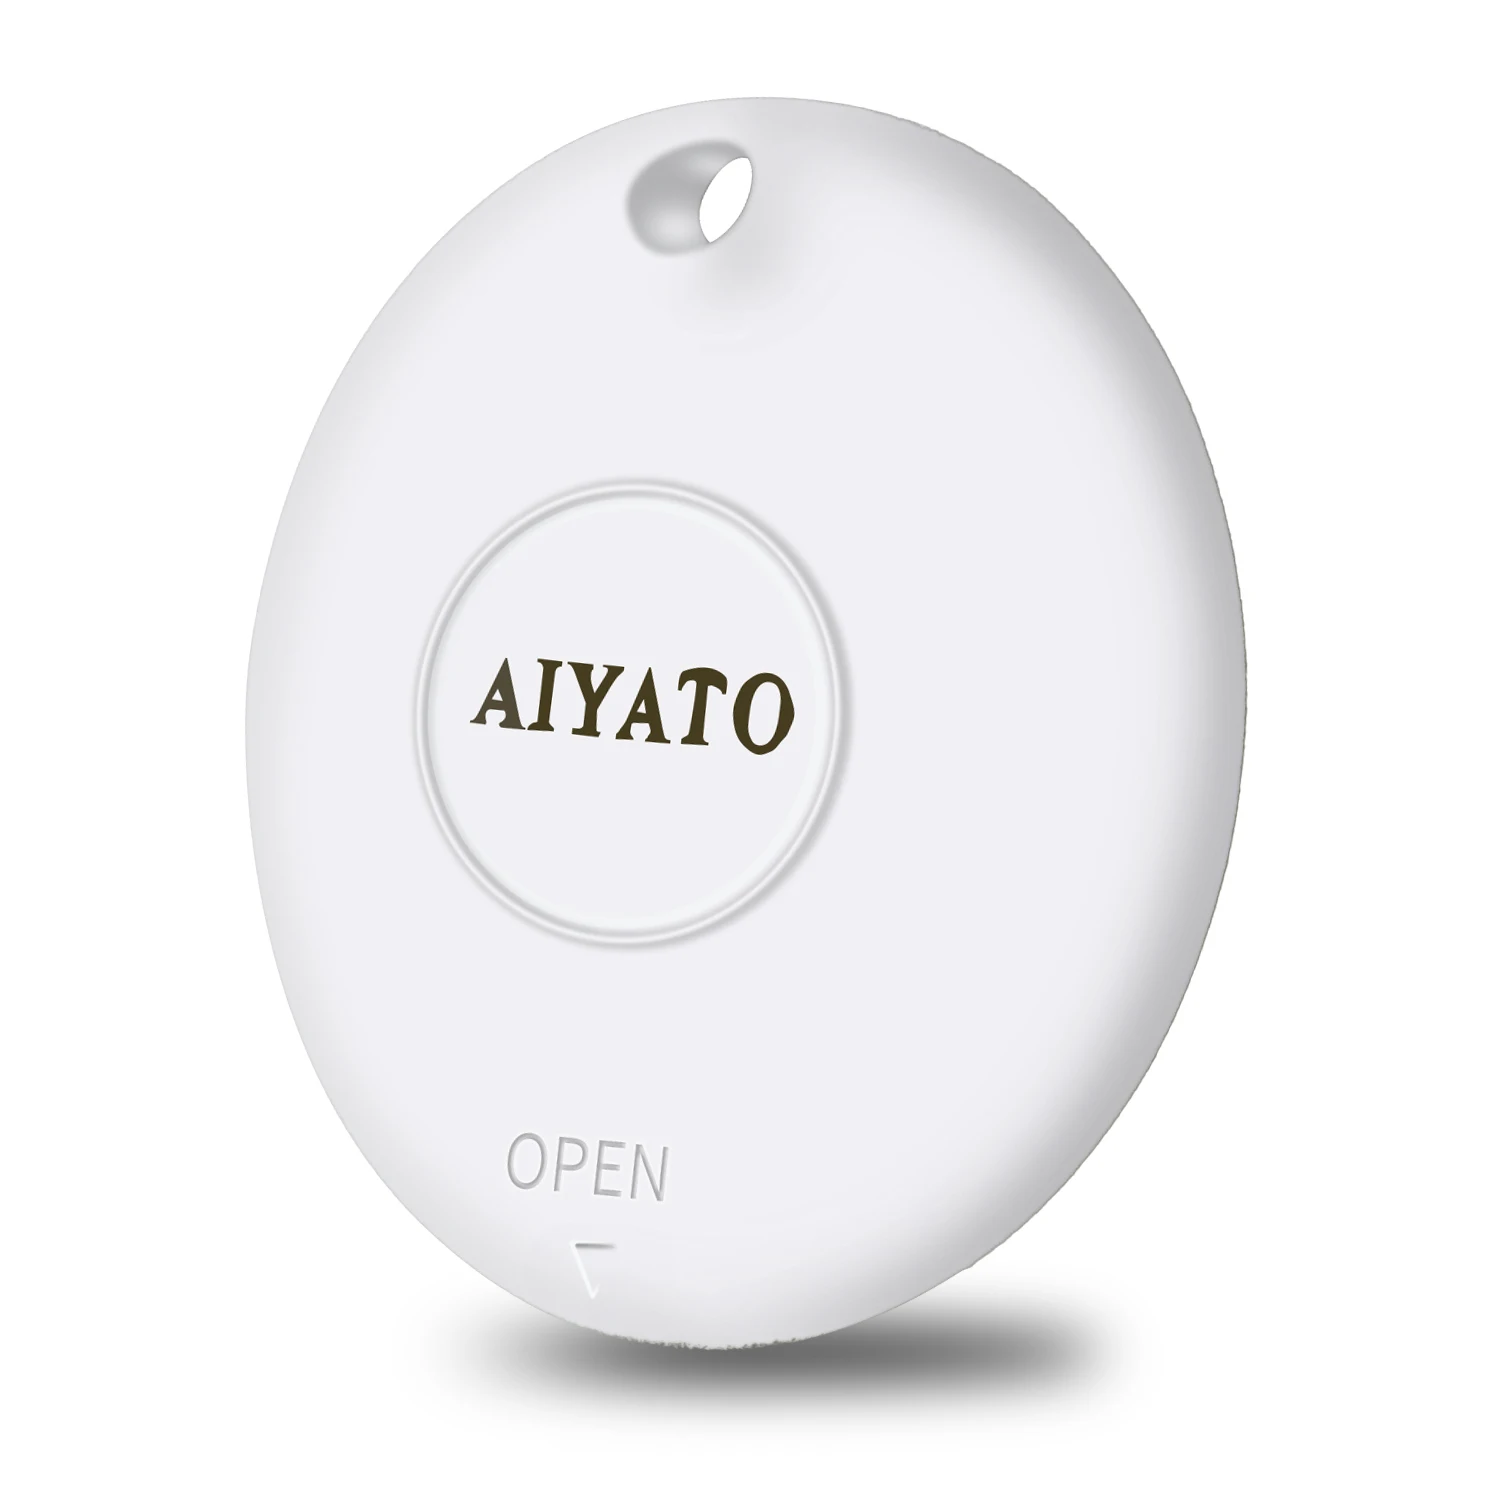 

Товар AIYATO, GPS-локатор для Apple Find мое приложение для поиска кошельков для ключей от потери багажа, кошек и собак, воздушные бирки, USB флэш-накопители, сумки,